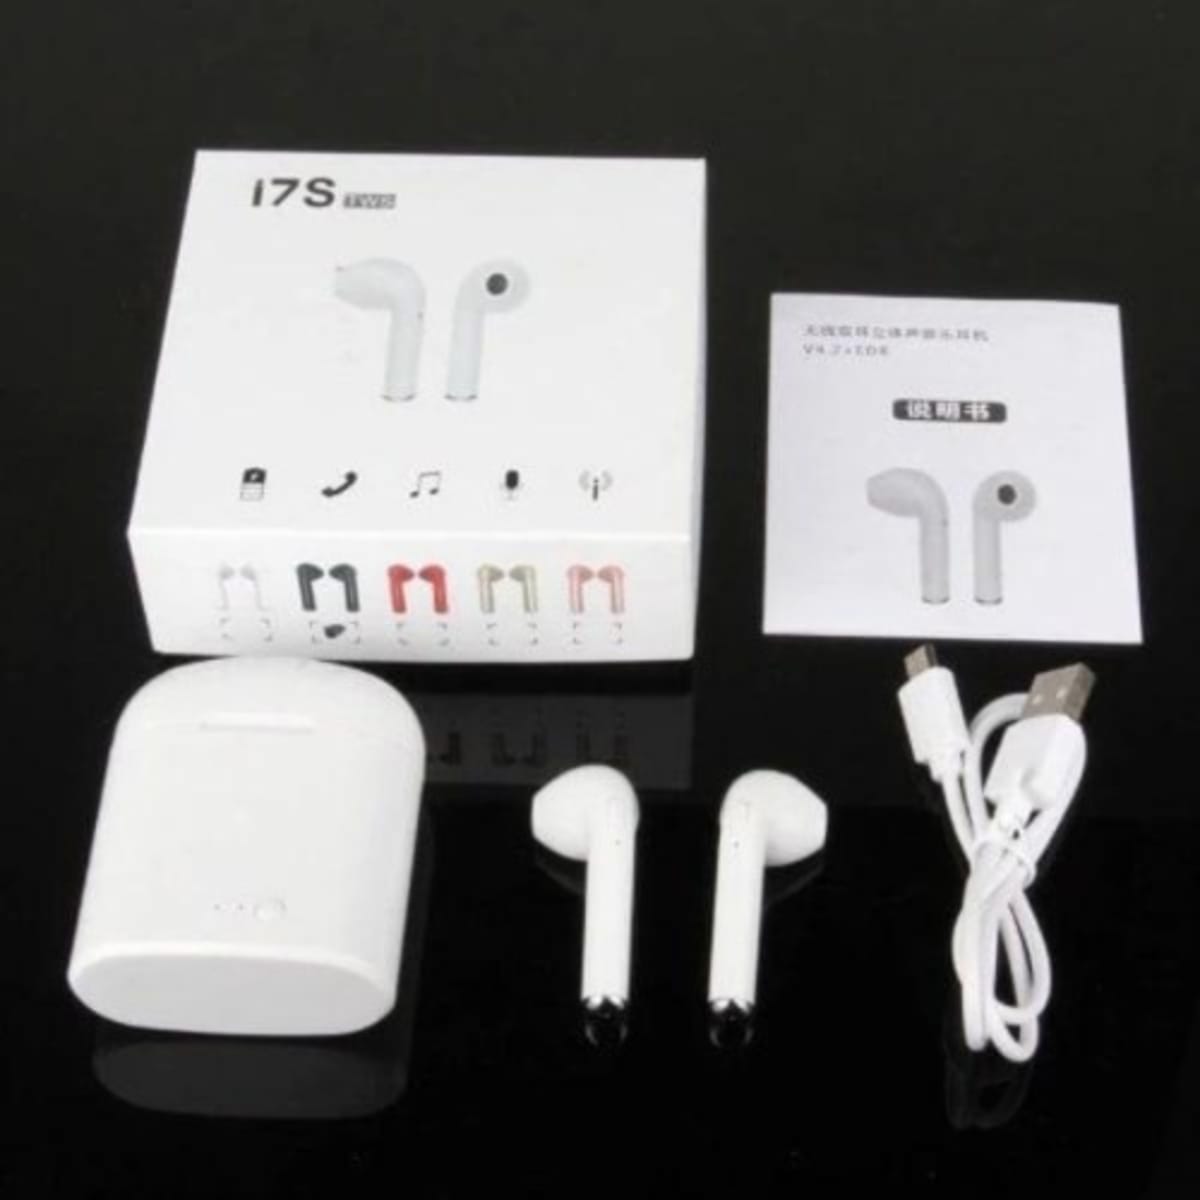 højt Udsøgt Skulptur I7s Tws Wireless Bluetooth Earphone - White | Konga Online Shopping